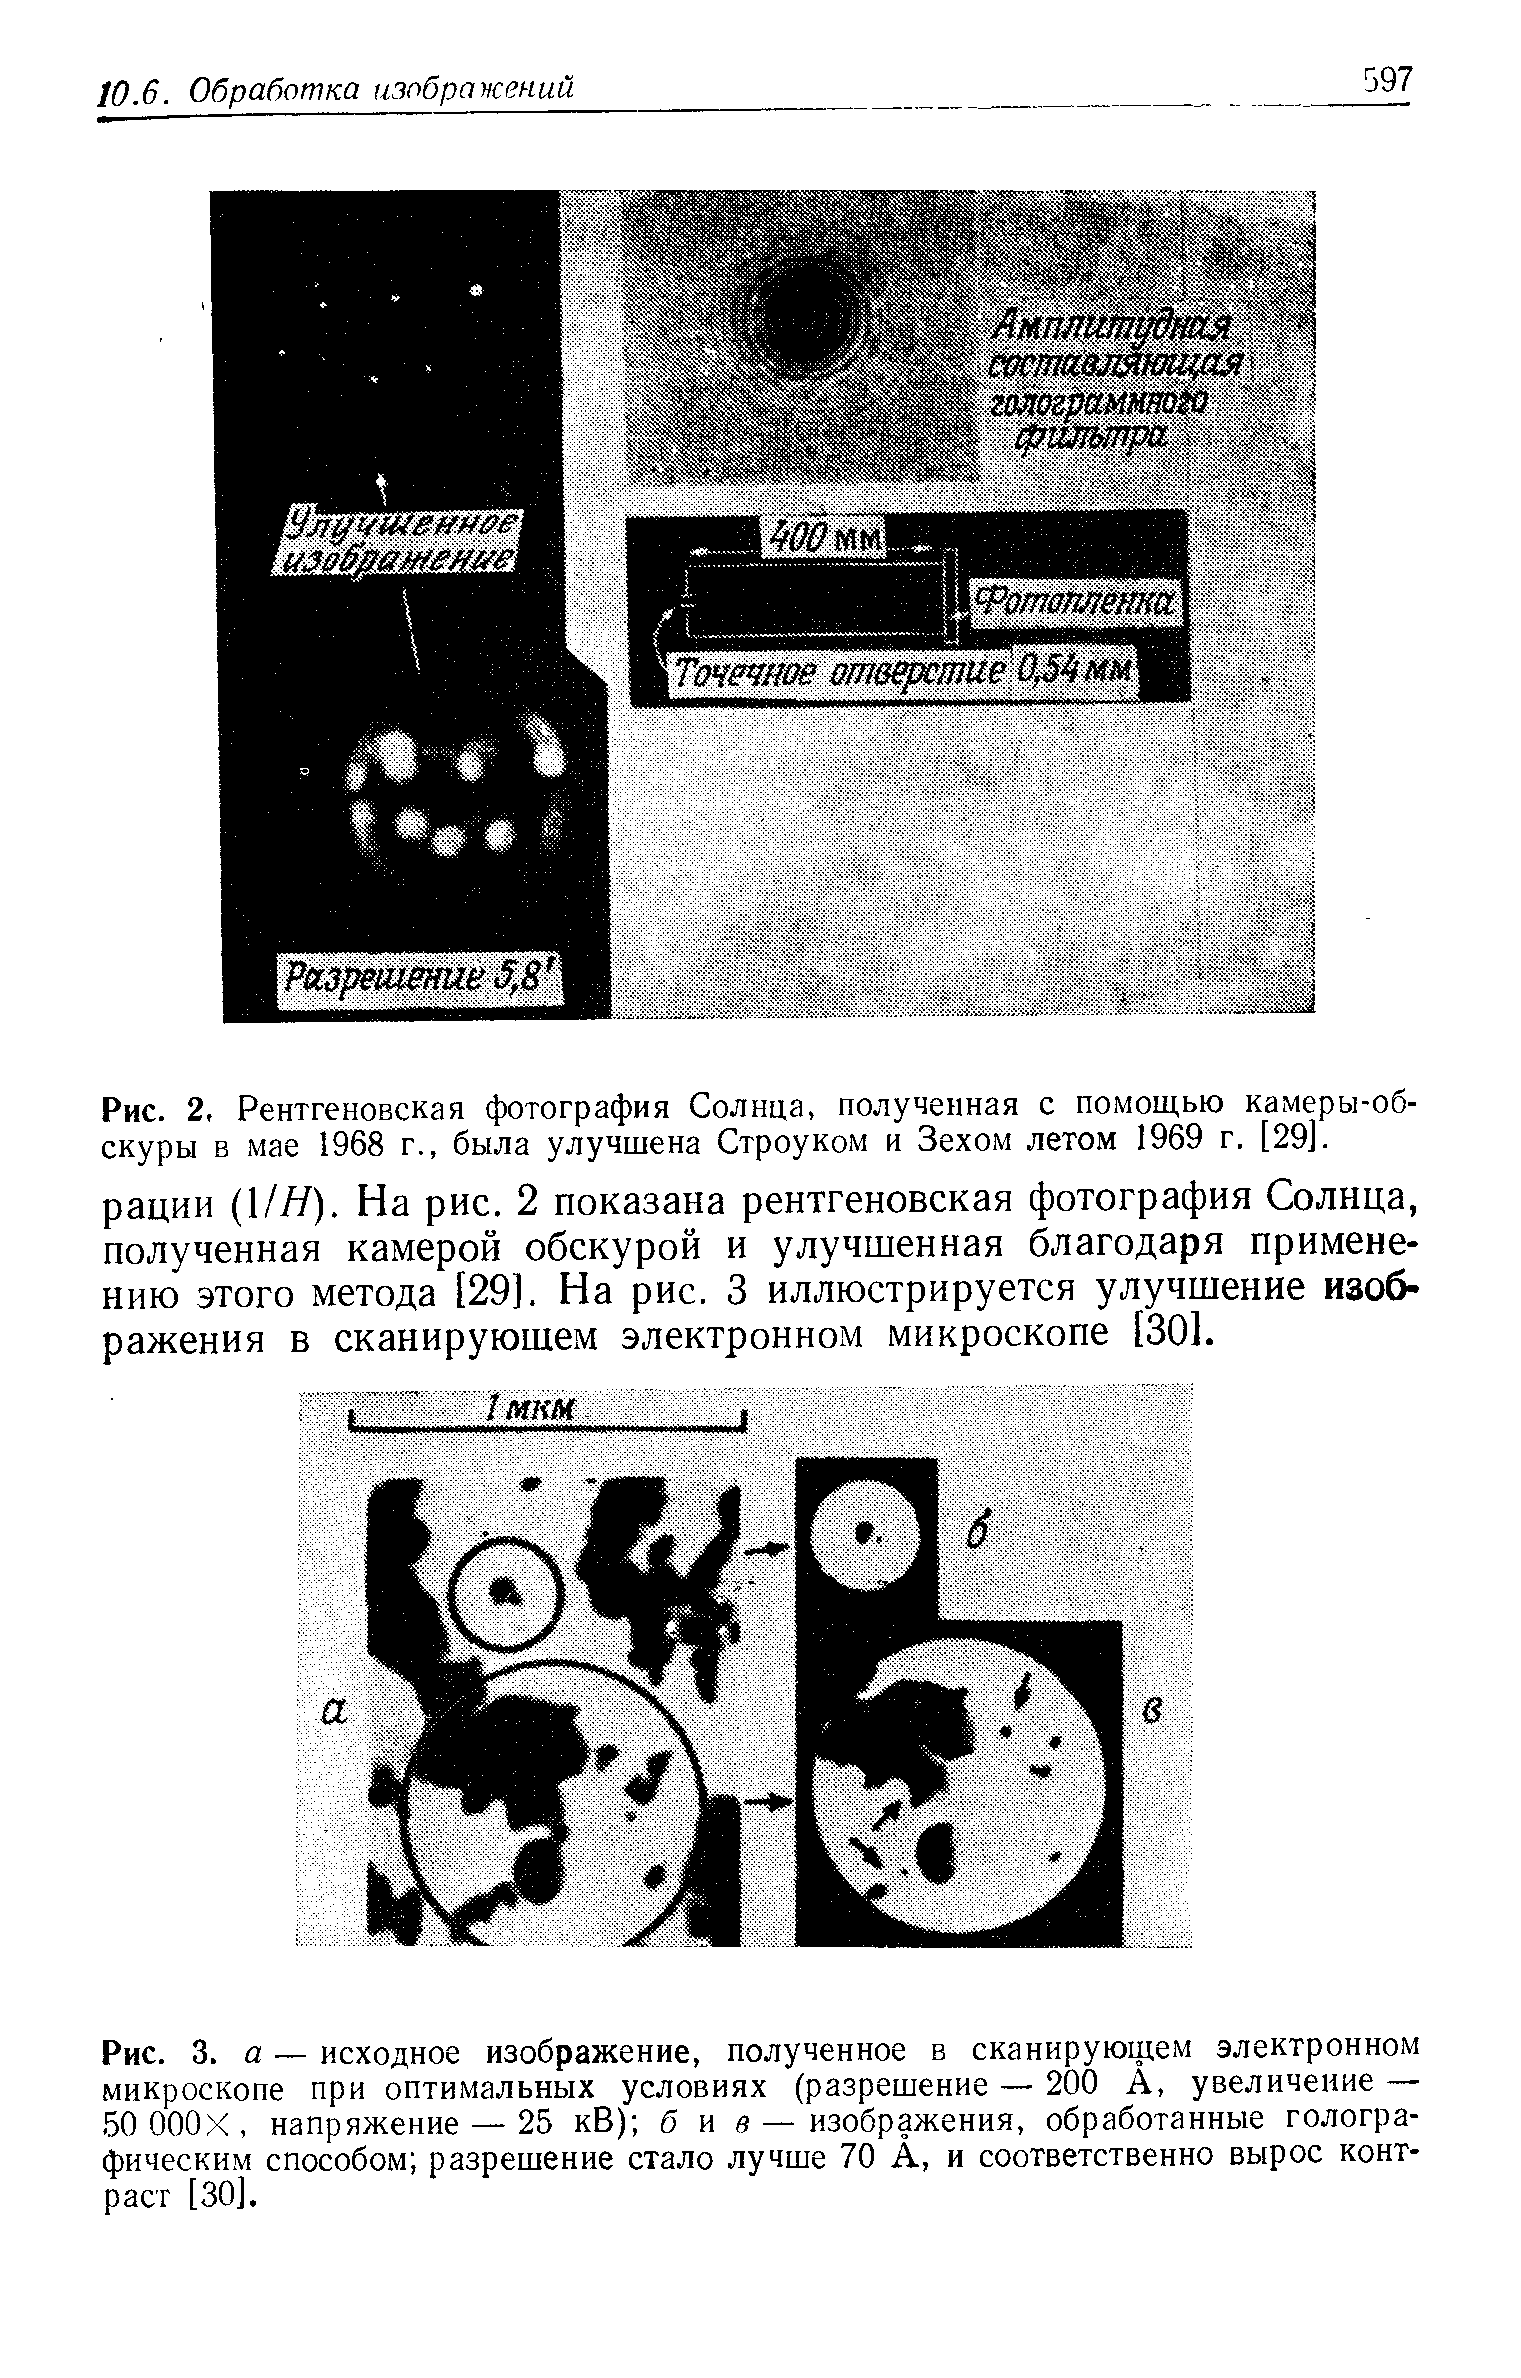 Рис. 2, Рентгеновская фотография Солнца, полученная с помощью камеры-обскуры в мае 1968 г., была улучшена Строуком и Зехом летом 1969 г. [29].
